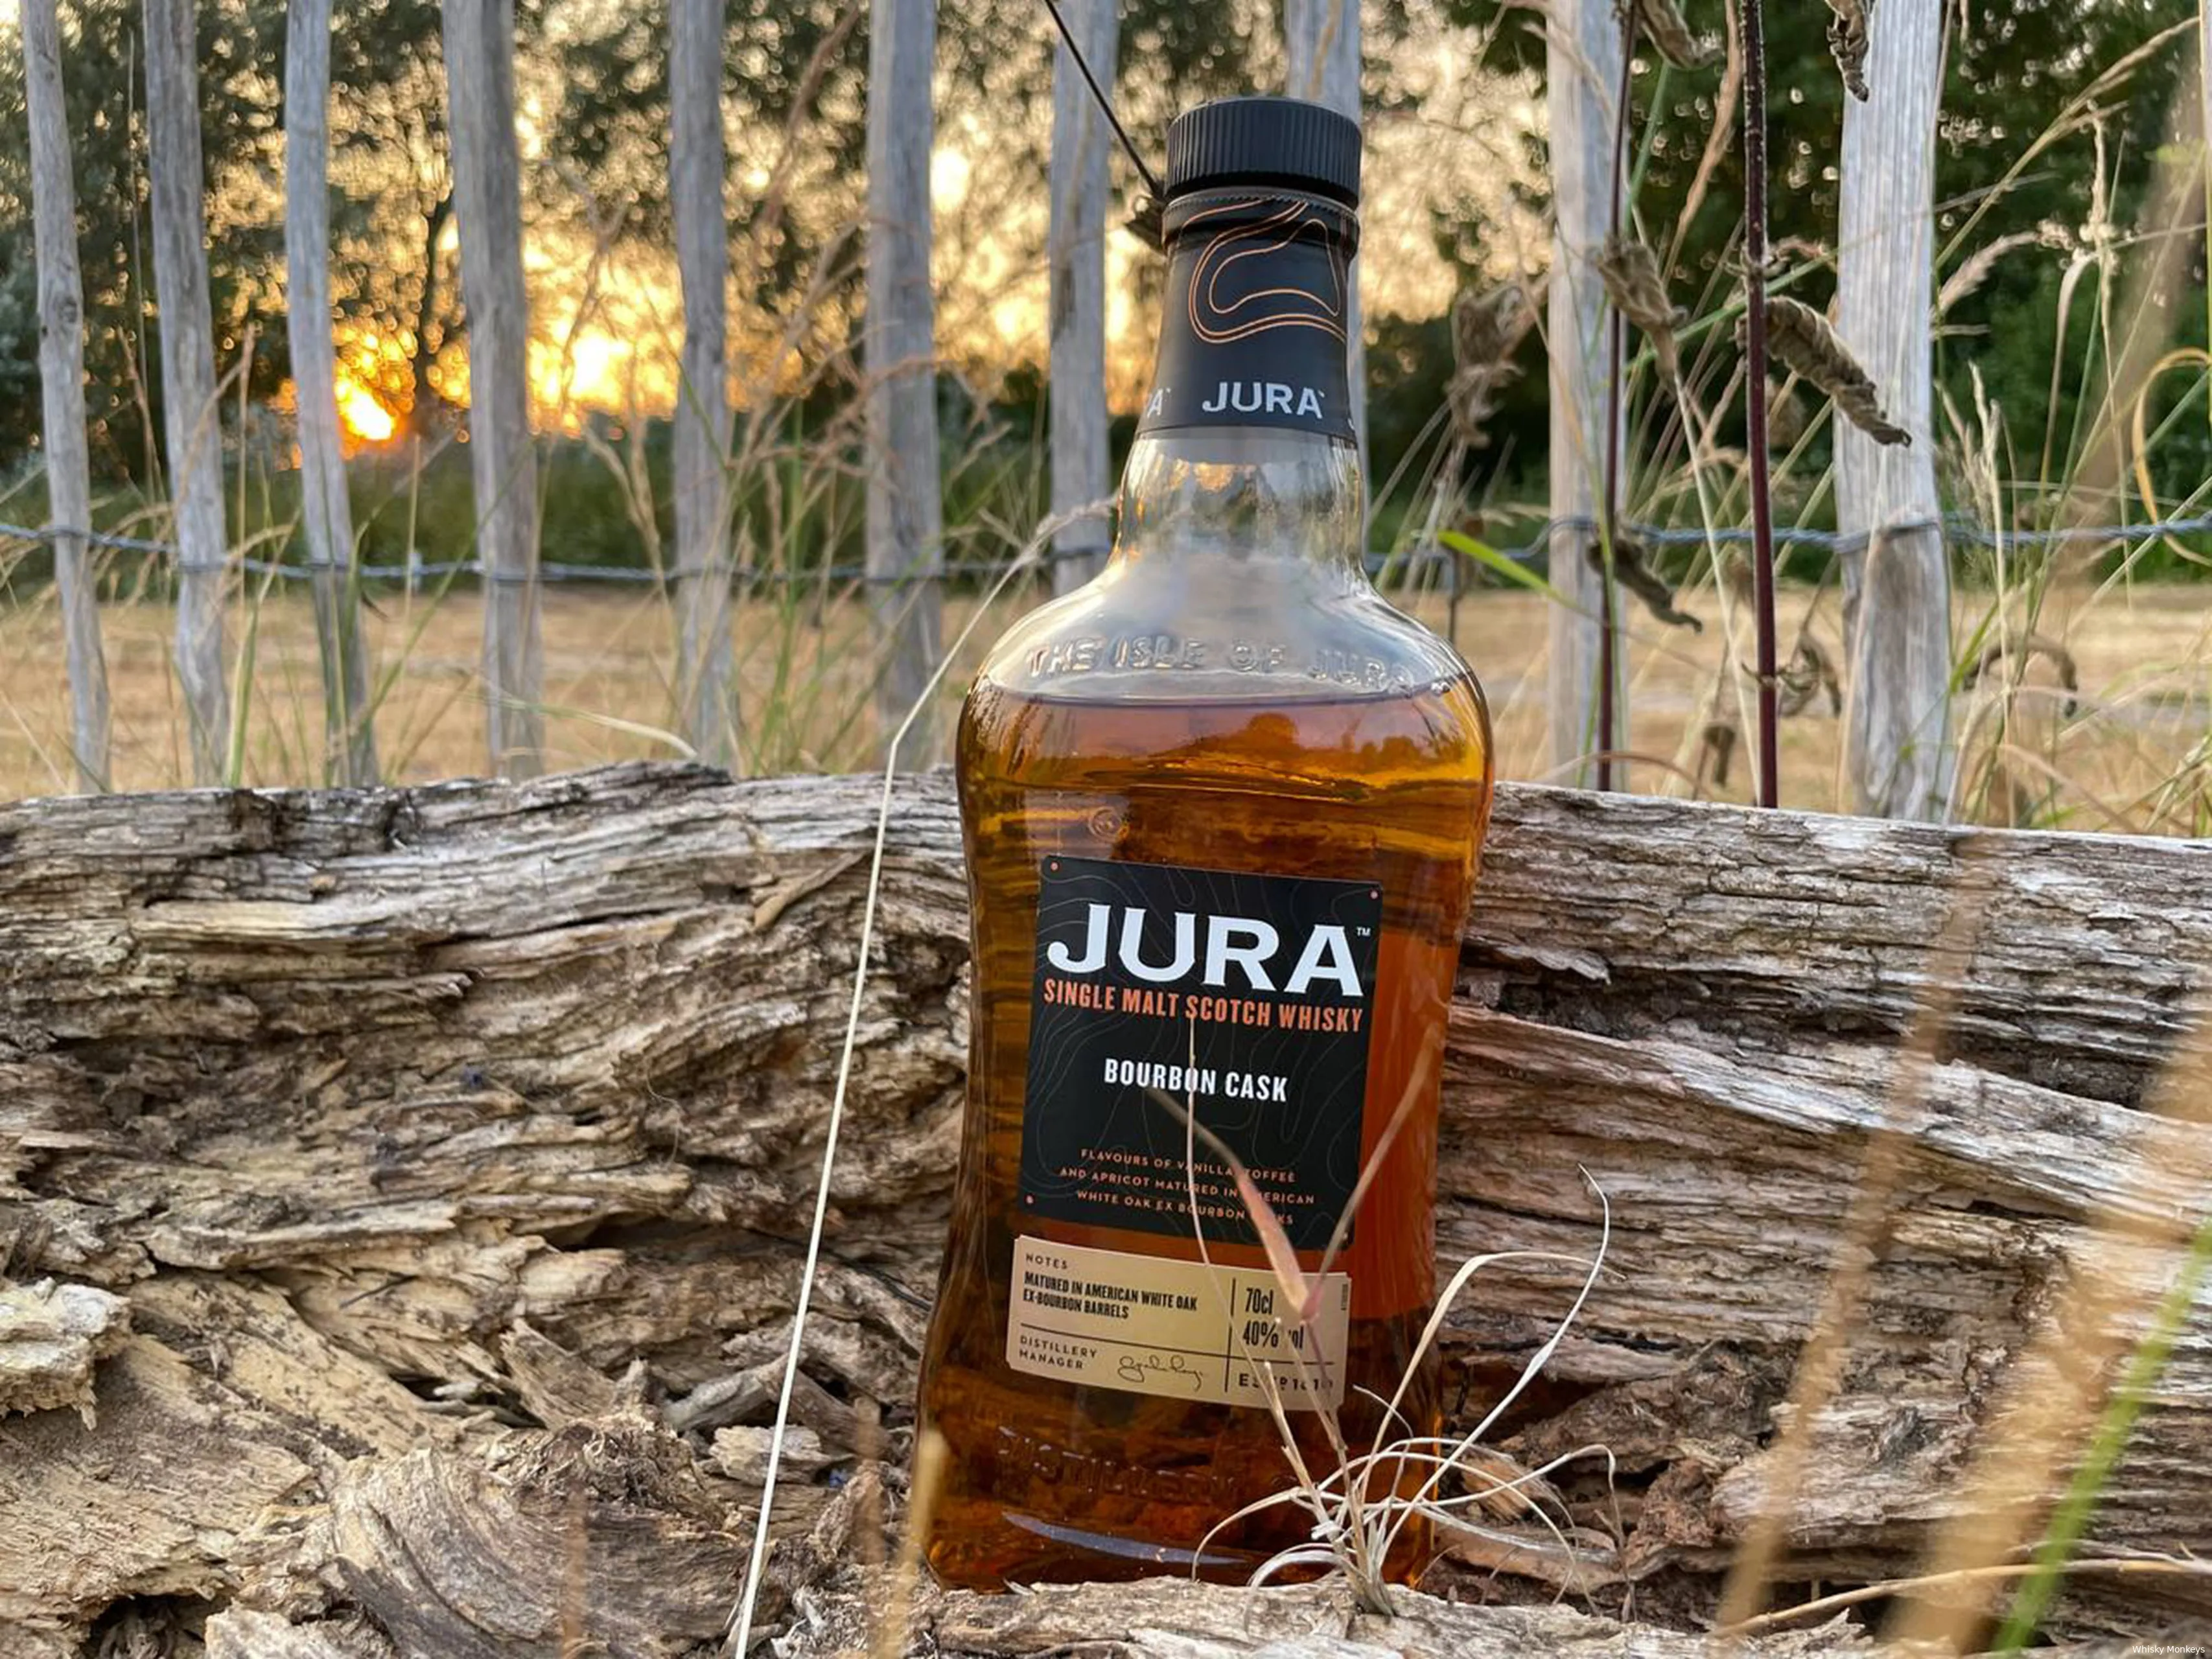 jura bourbon cask whisky monkeys 3